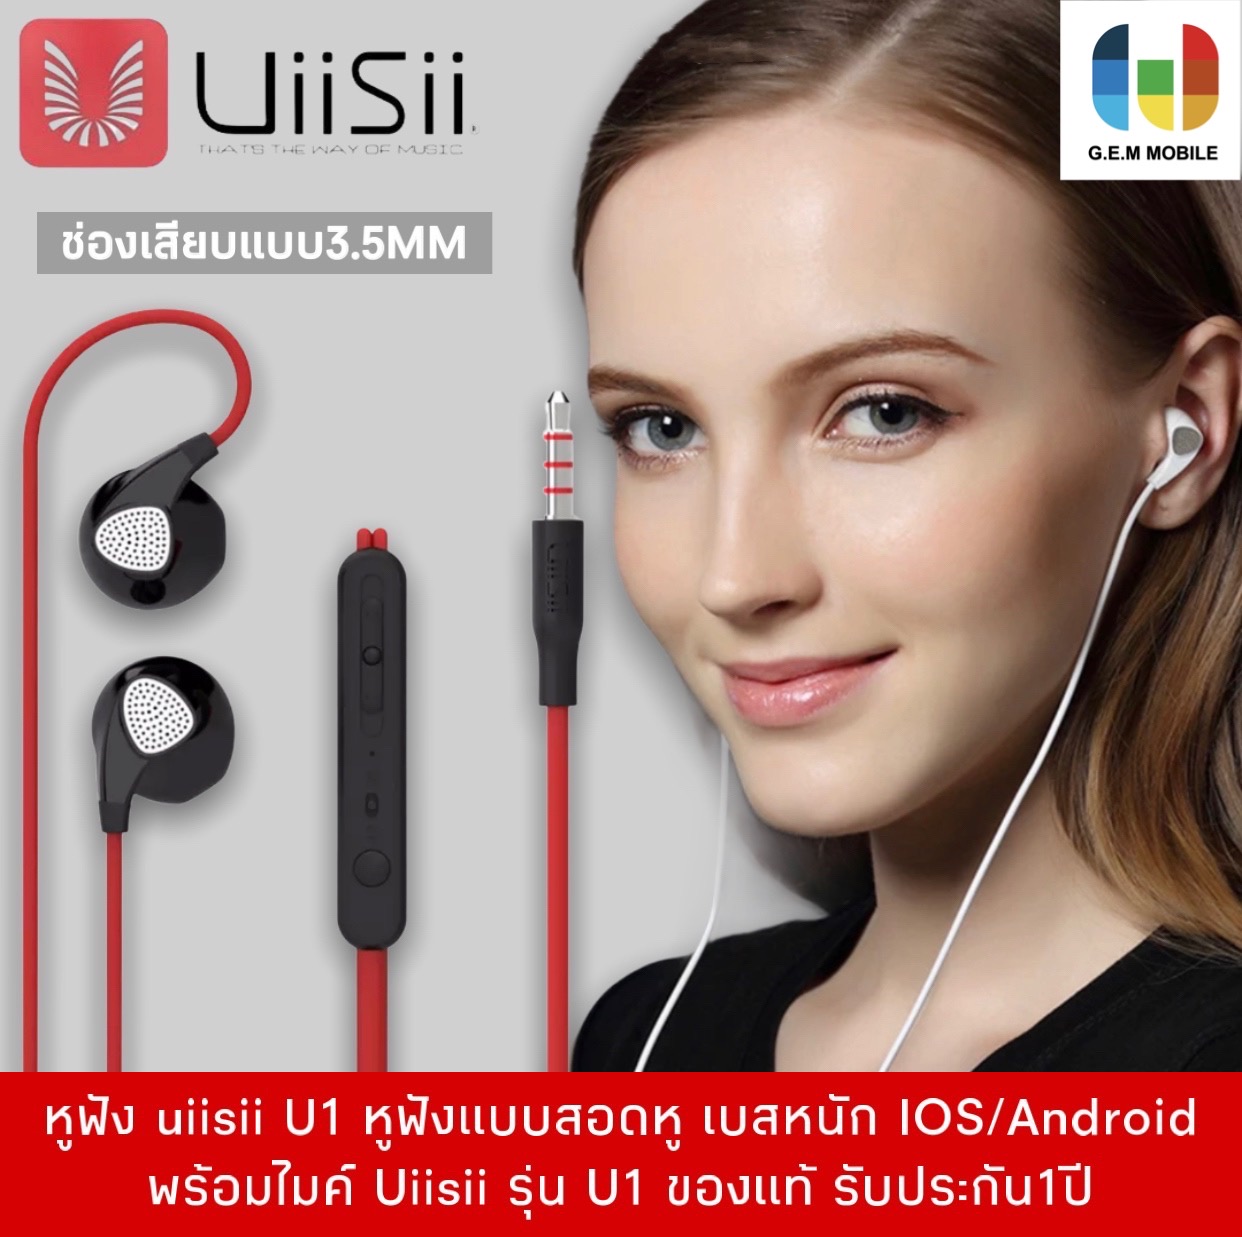 หูฟัง uiisii U1 หูฟังแบบสอดหู เบสหนัก IOS/Android พร้อมไมค์ Uiisii รุ่น U1 ของแท้ รับประกัน1ปBY GEMMOBILE